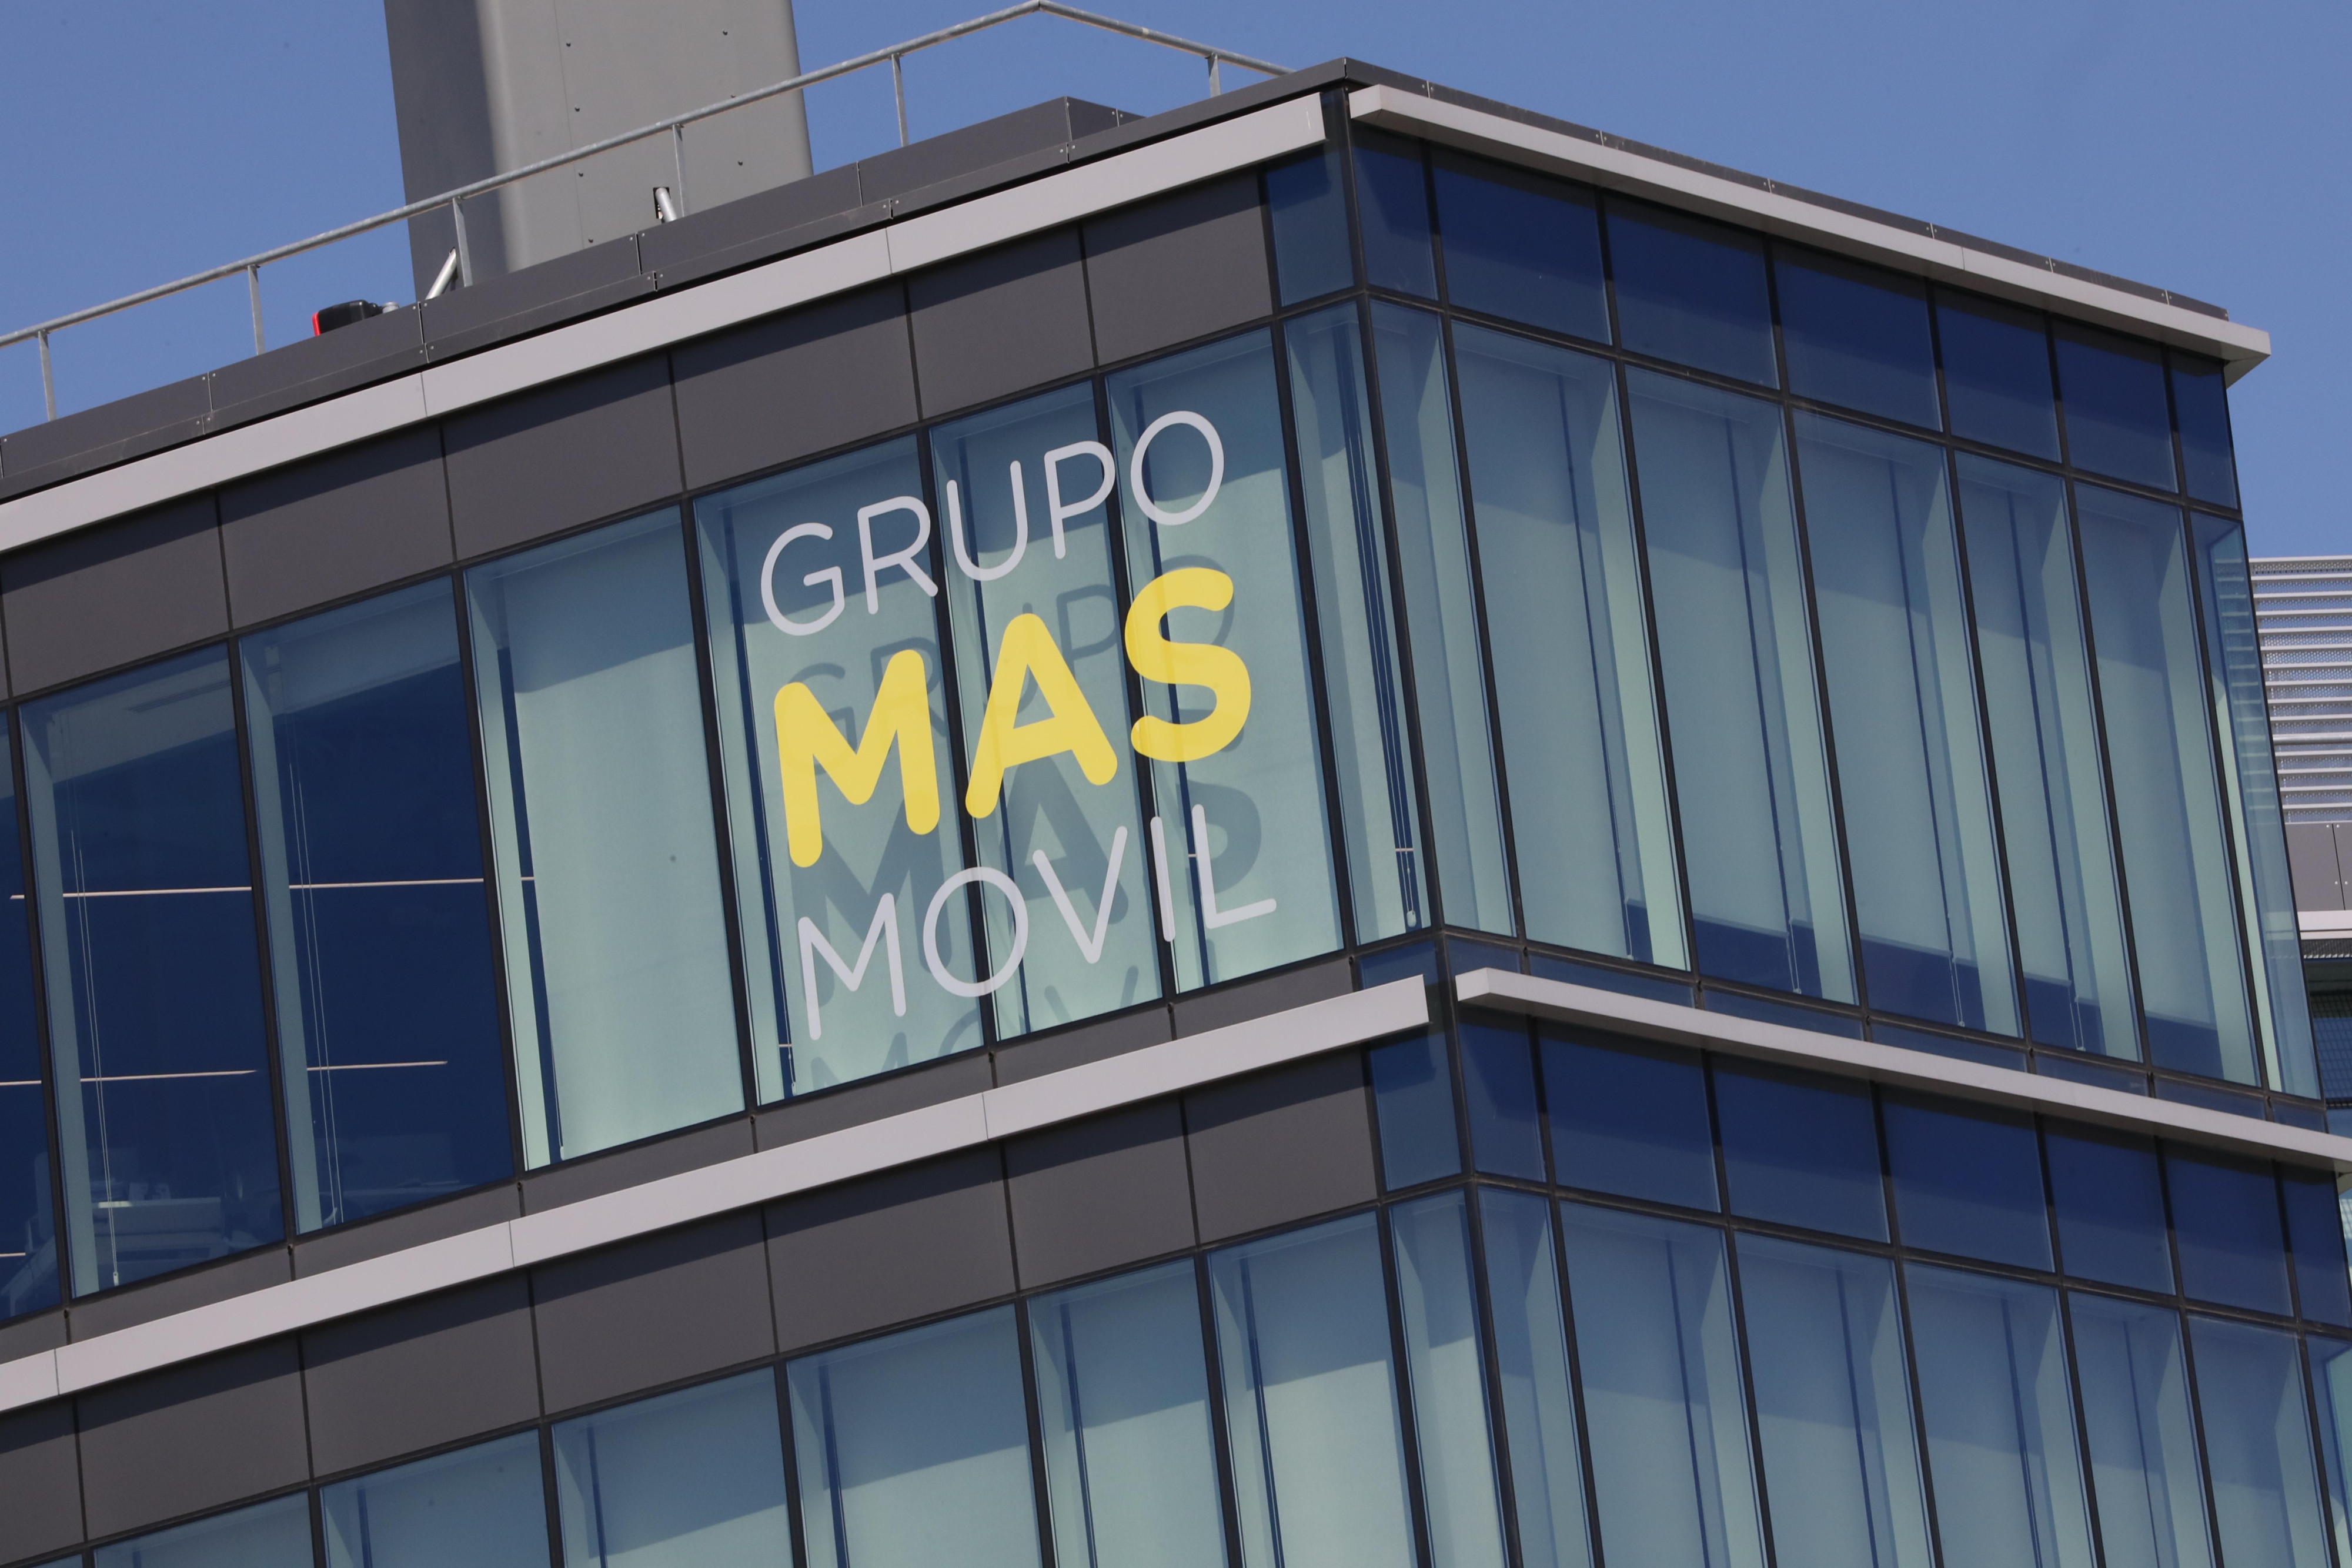 Sede del Grupo MásMóvil, ubicada en Madrid / EP